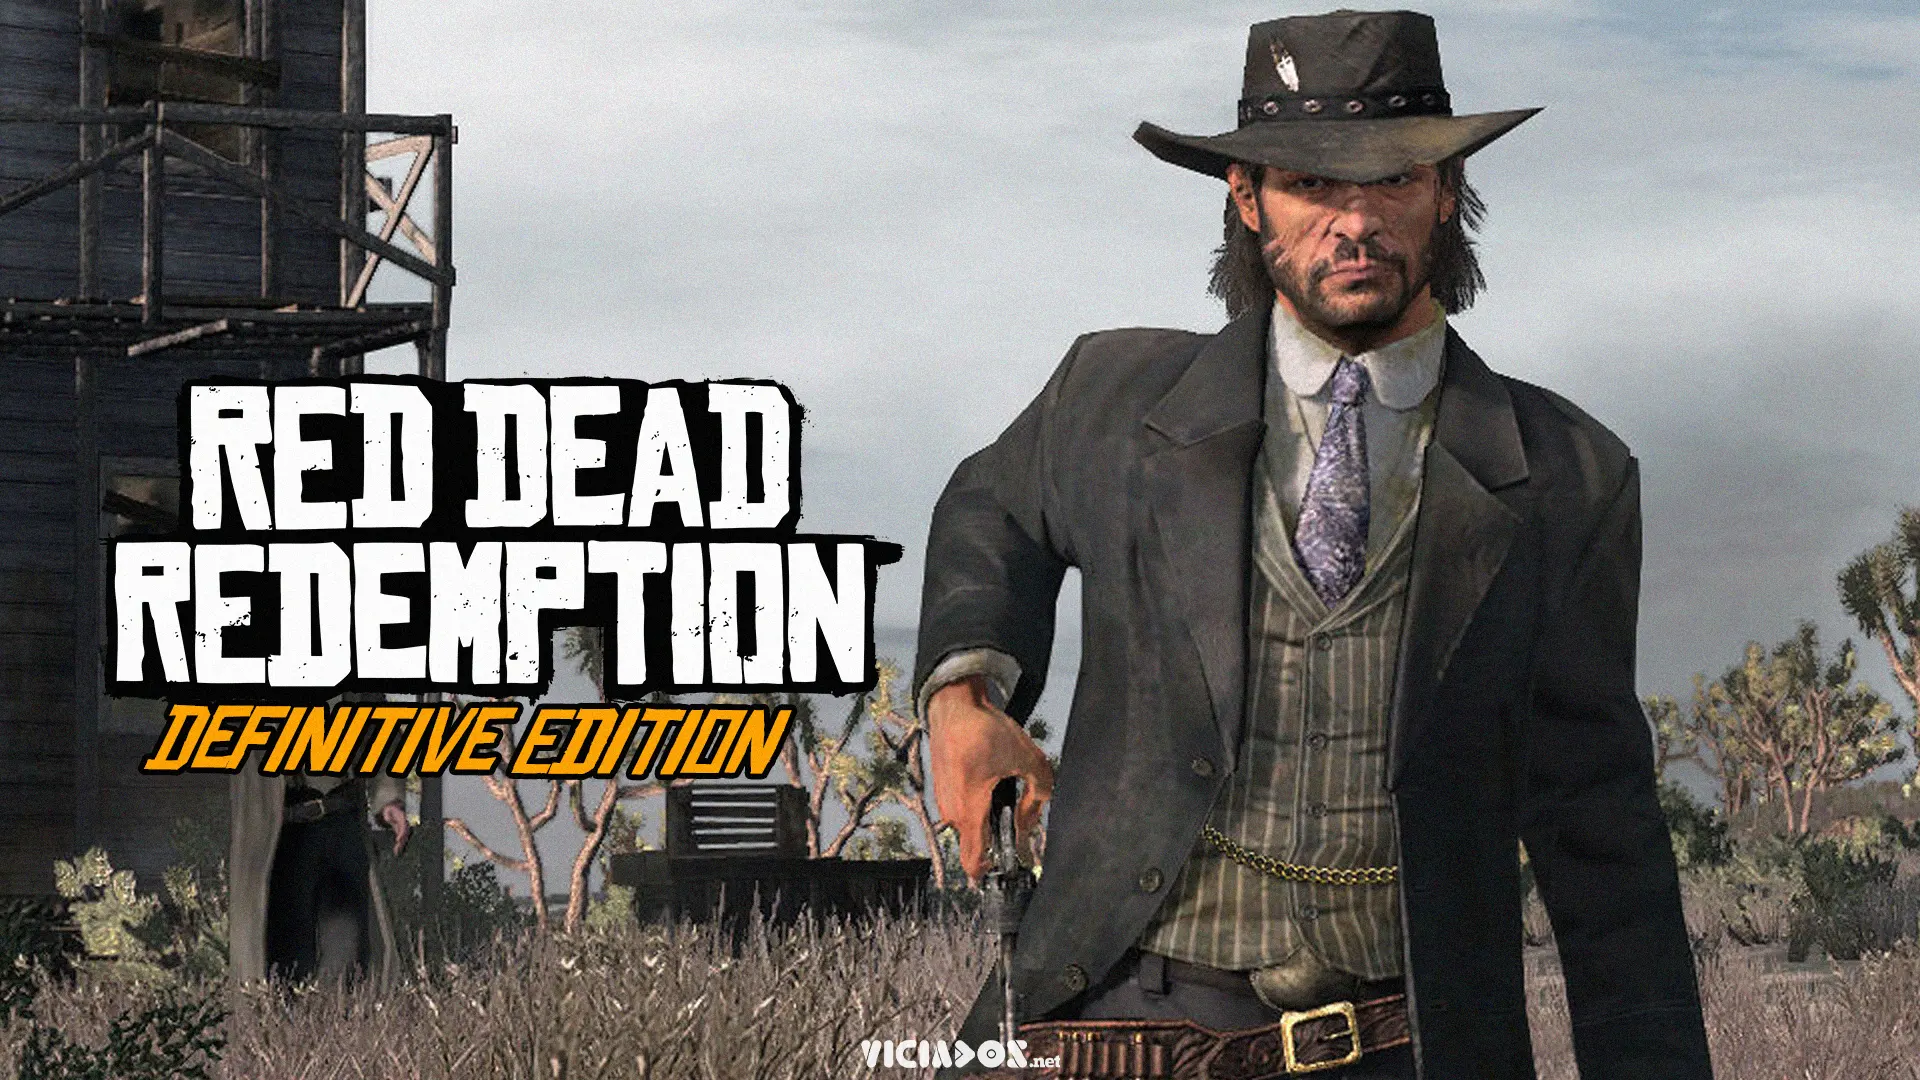 Red Dead Redemption 2 certamente vai receber um patch para a nova geração e agora o Red Dead Redemption Original pode estar recebendo um remaster muito em breve, feito pelas mãos da Rockstar North.